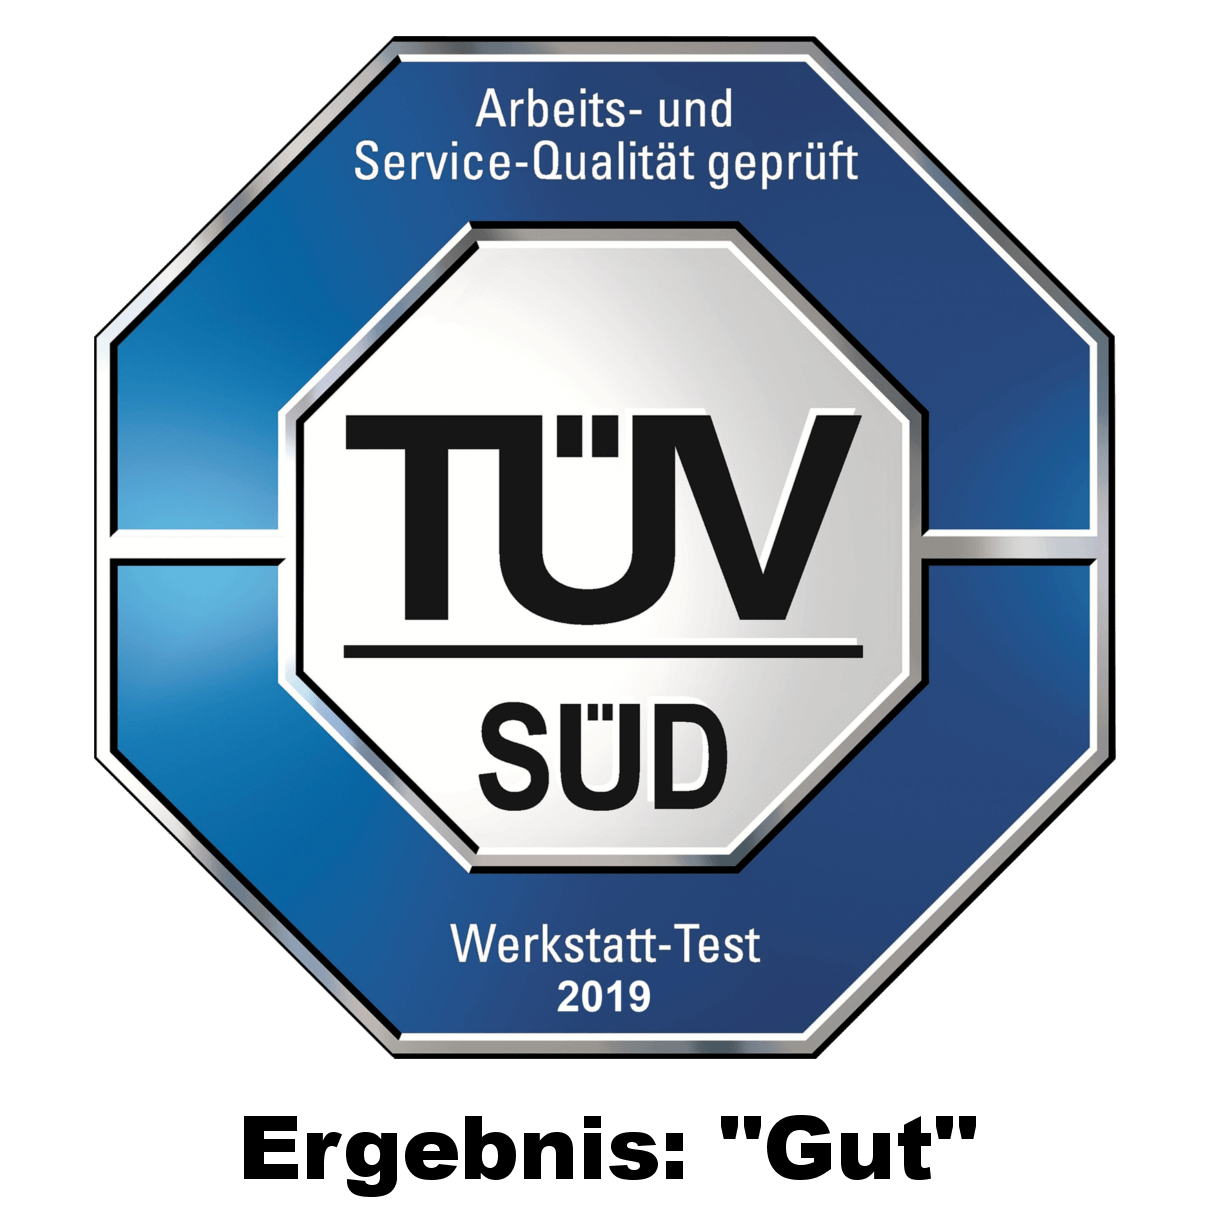 Egrebnis "Gut" von TÜV-Süd für die Kfz-Werkstatt Autohaus Turhan